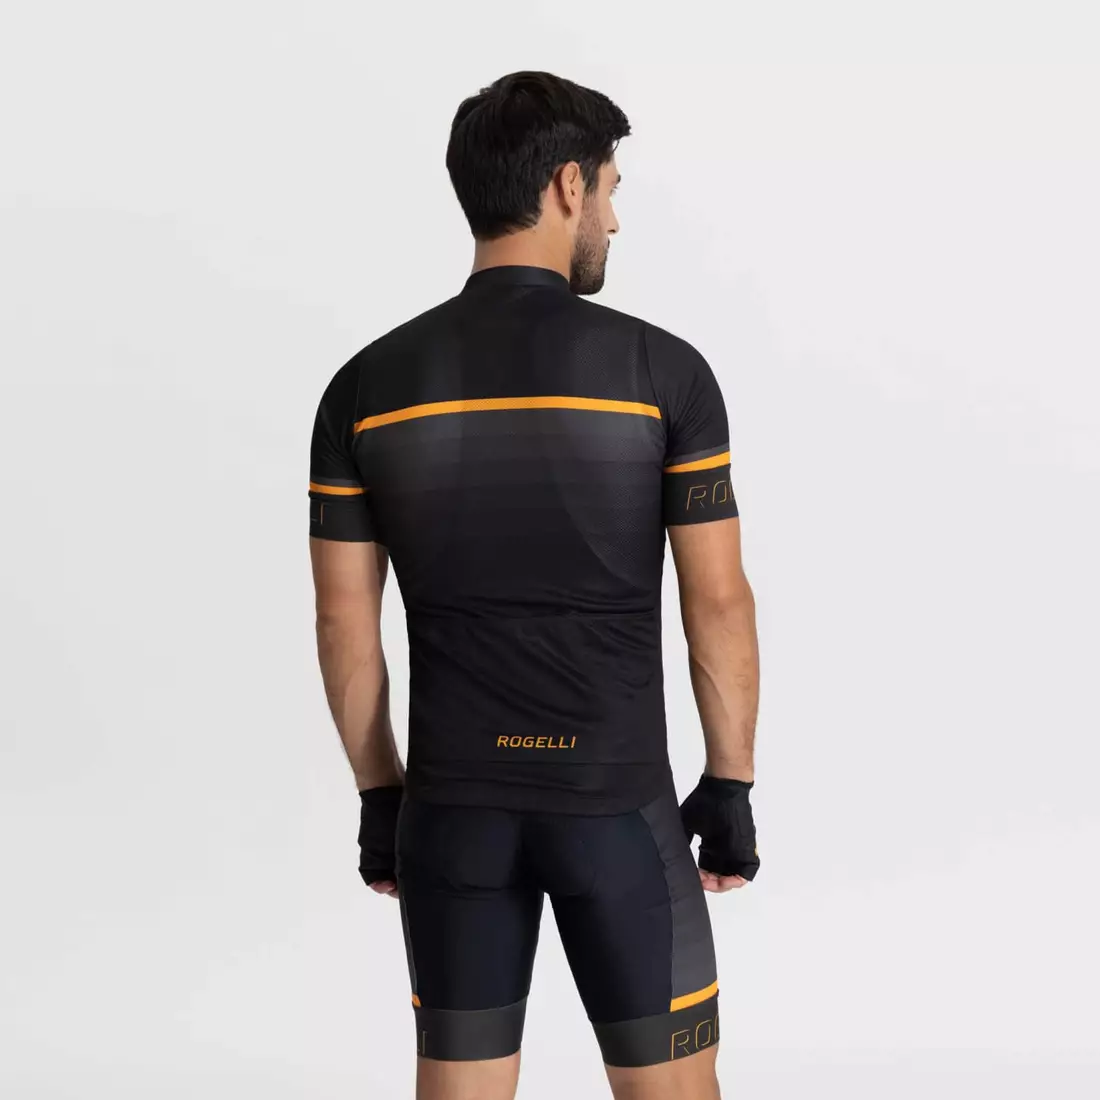 Rogelli HERO II męska koszulka rowerowa, czarno-pomarańczowa